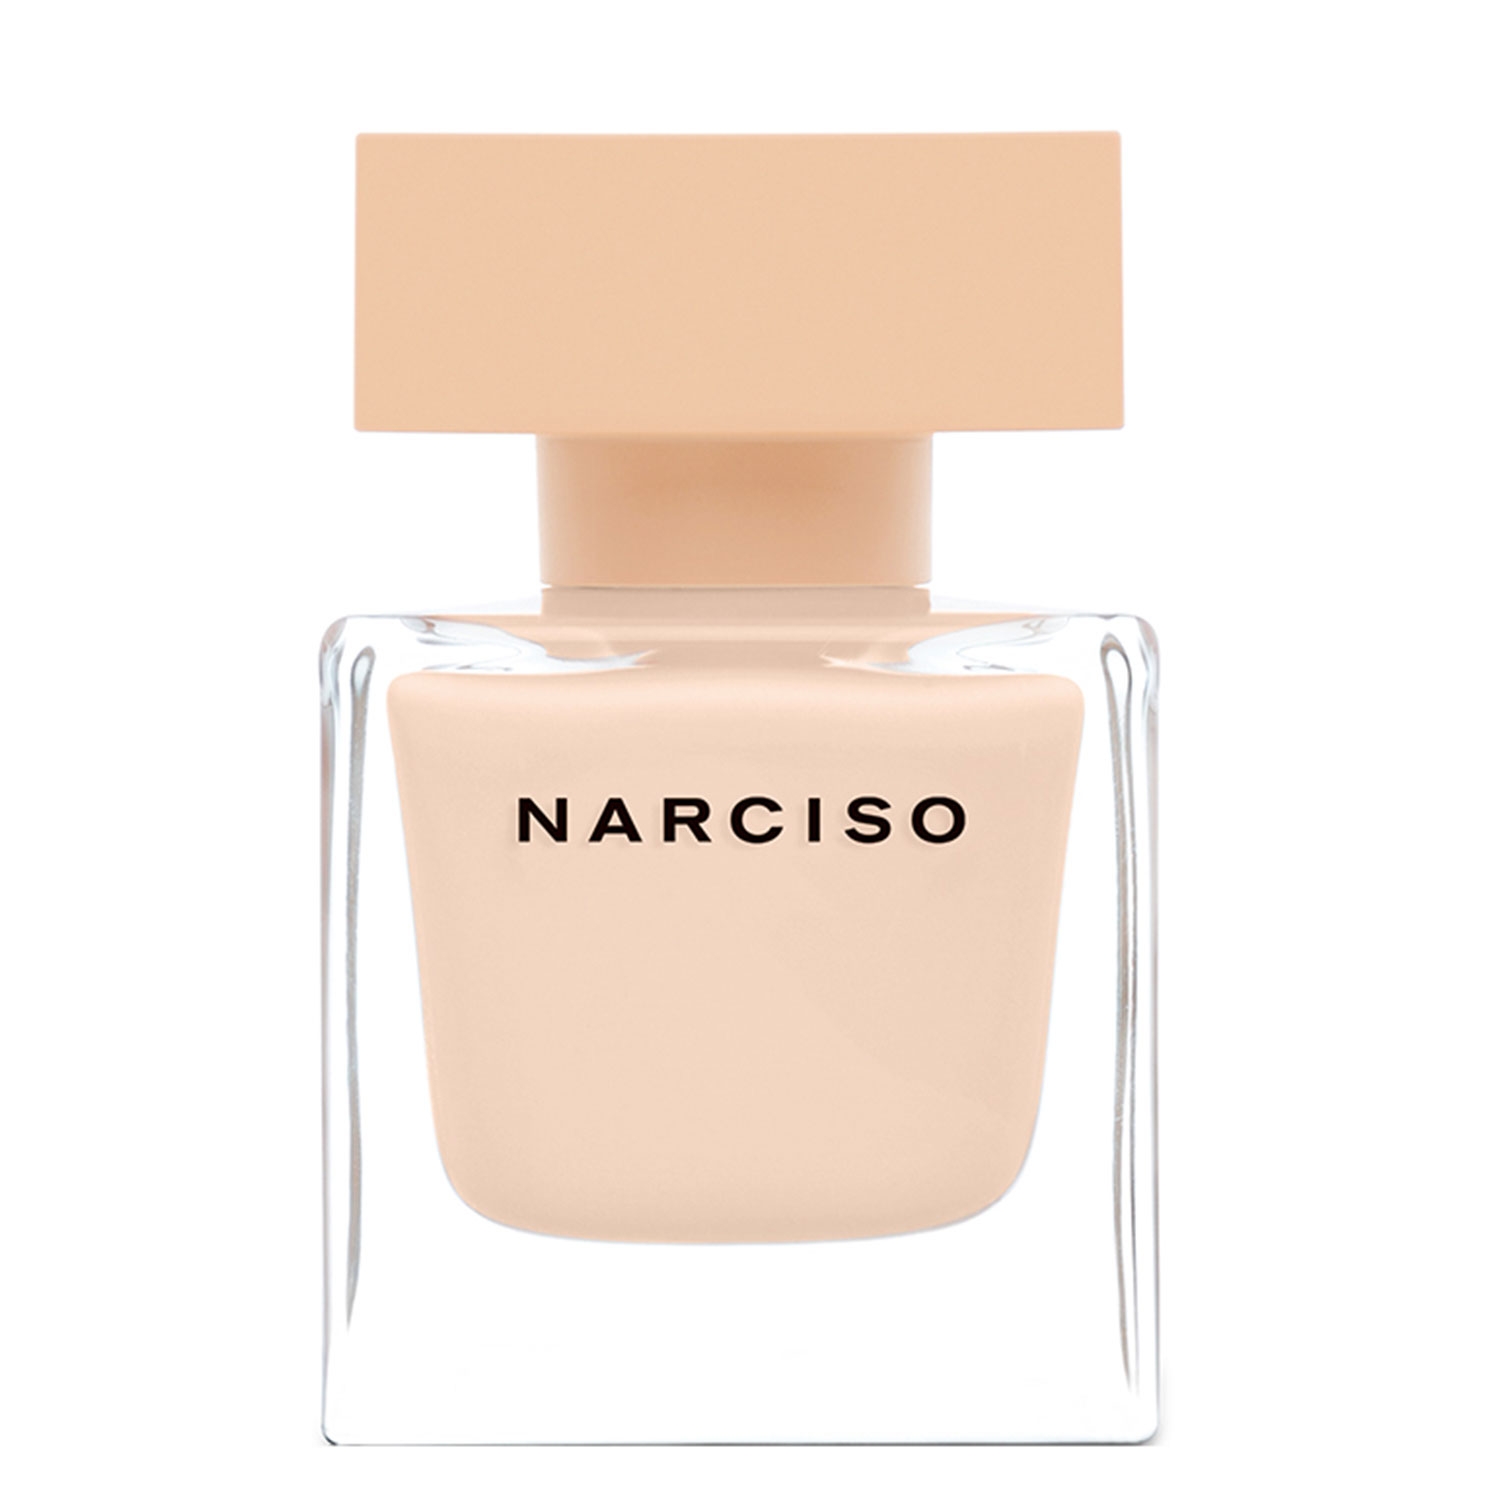 Product image from Narciso - Eau de Parfum Poudrée